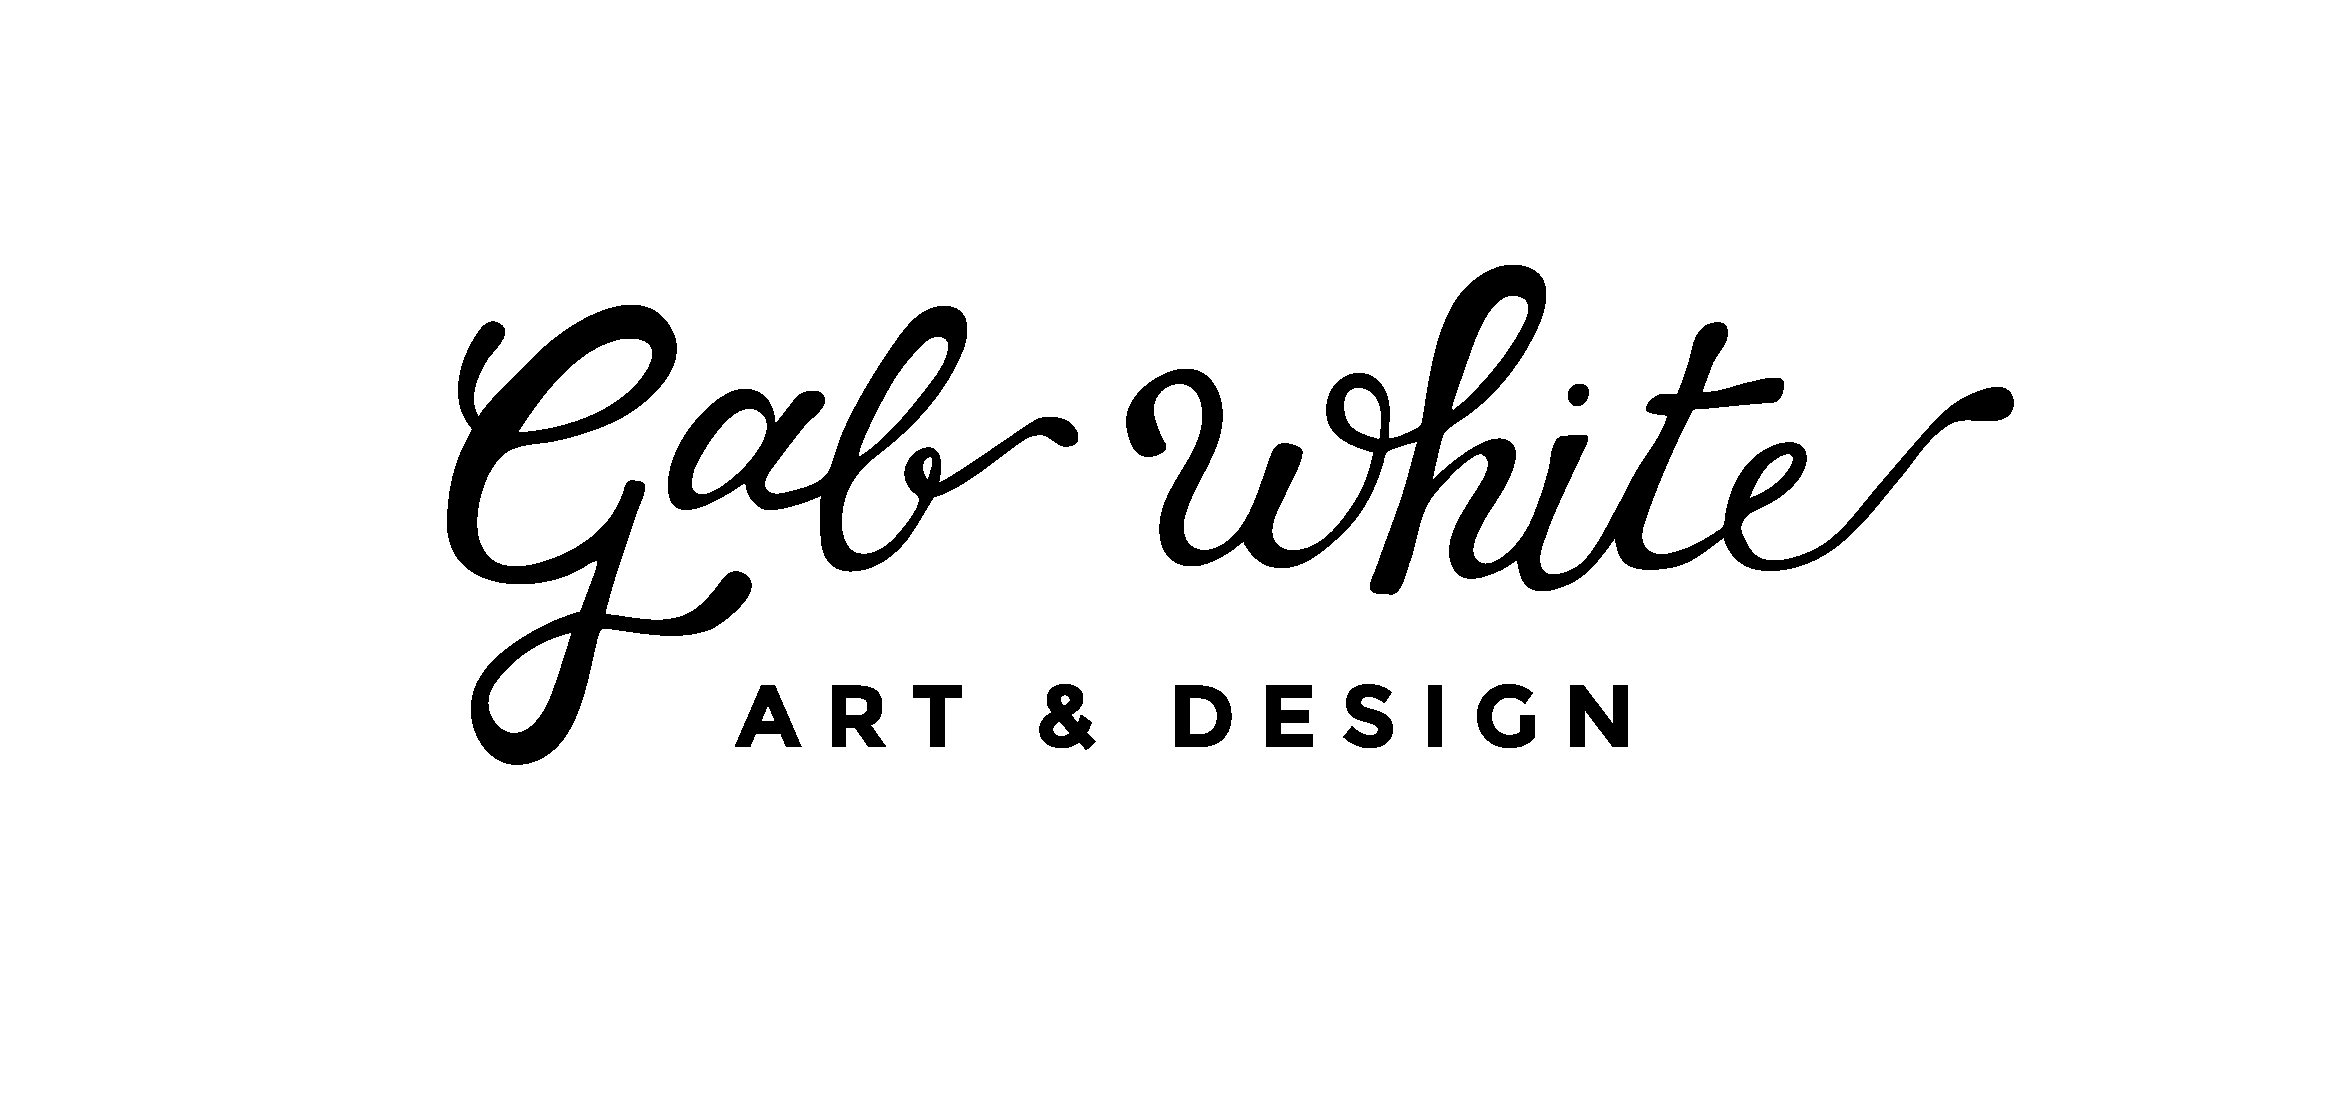 Gab Logo - logo-designs-animation - Gab White Art & Design - Gab White Art & Design